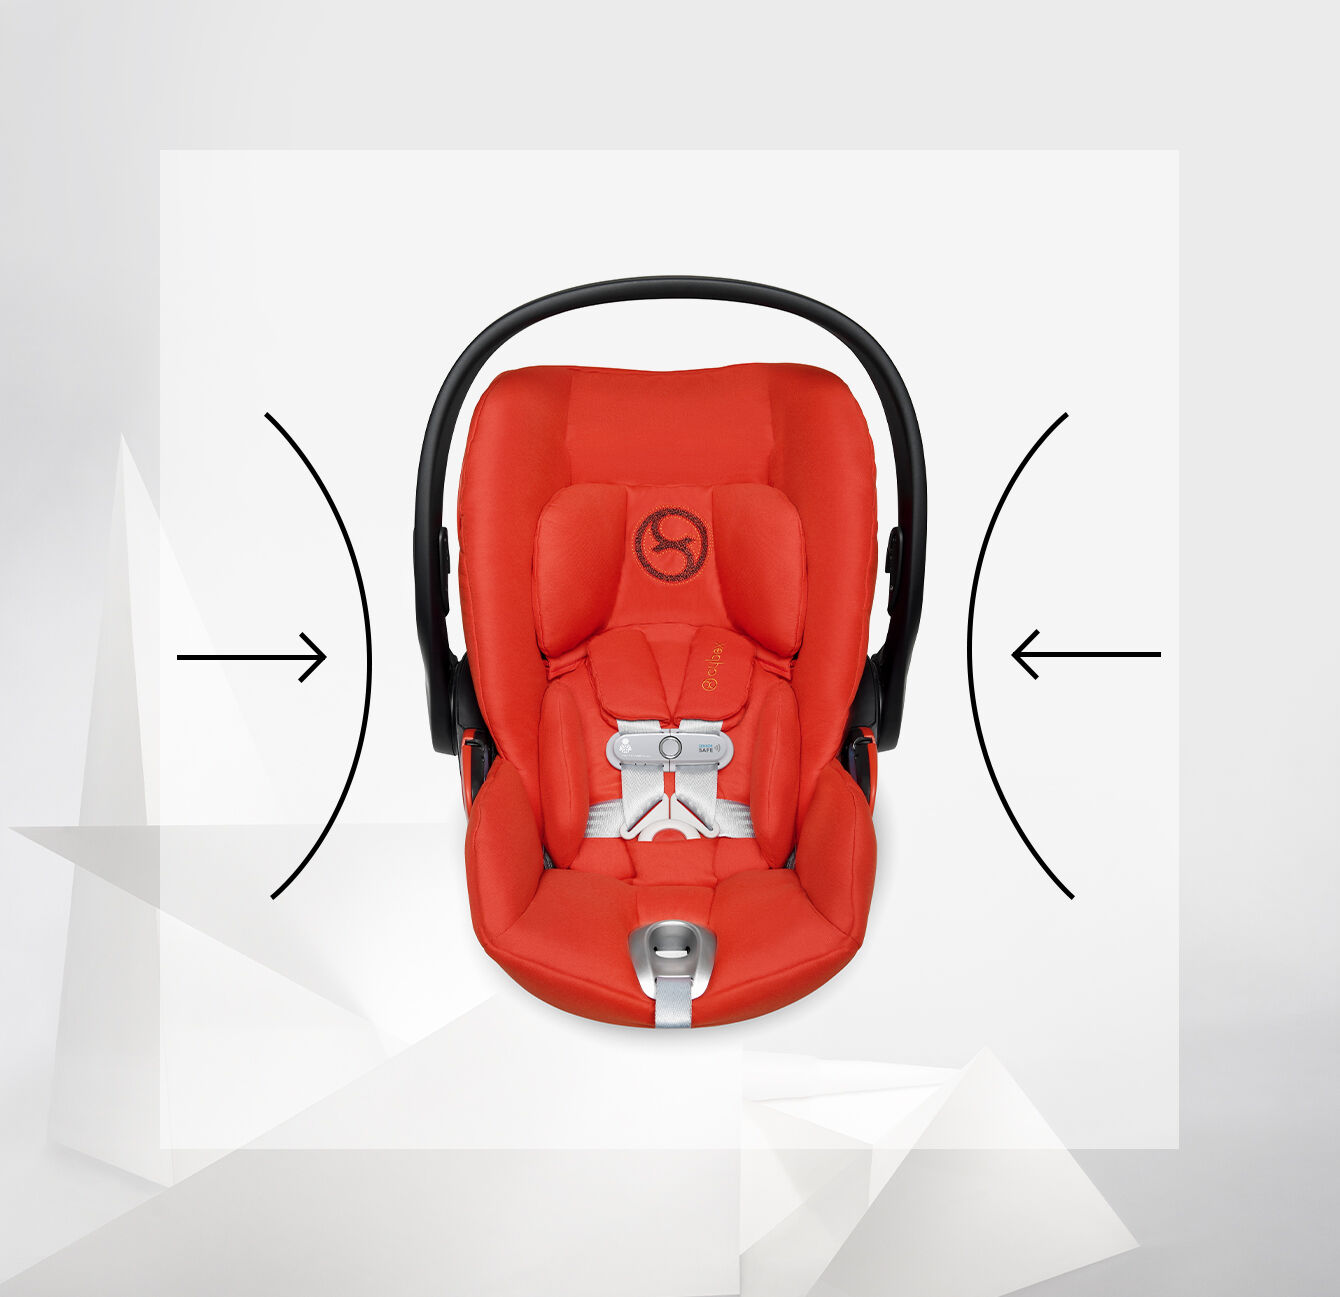 The Cloud Q Infant Car Seat by Cybex Platinum